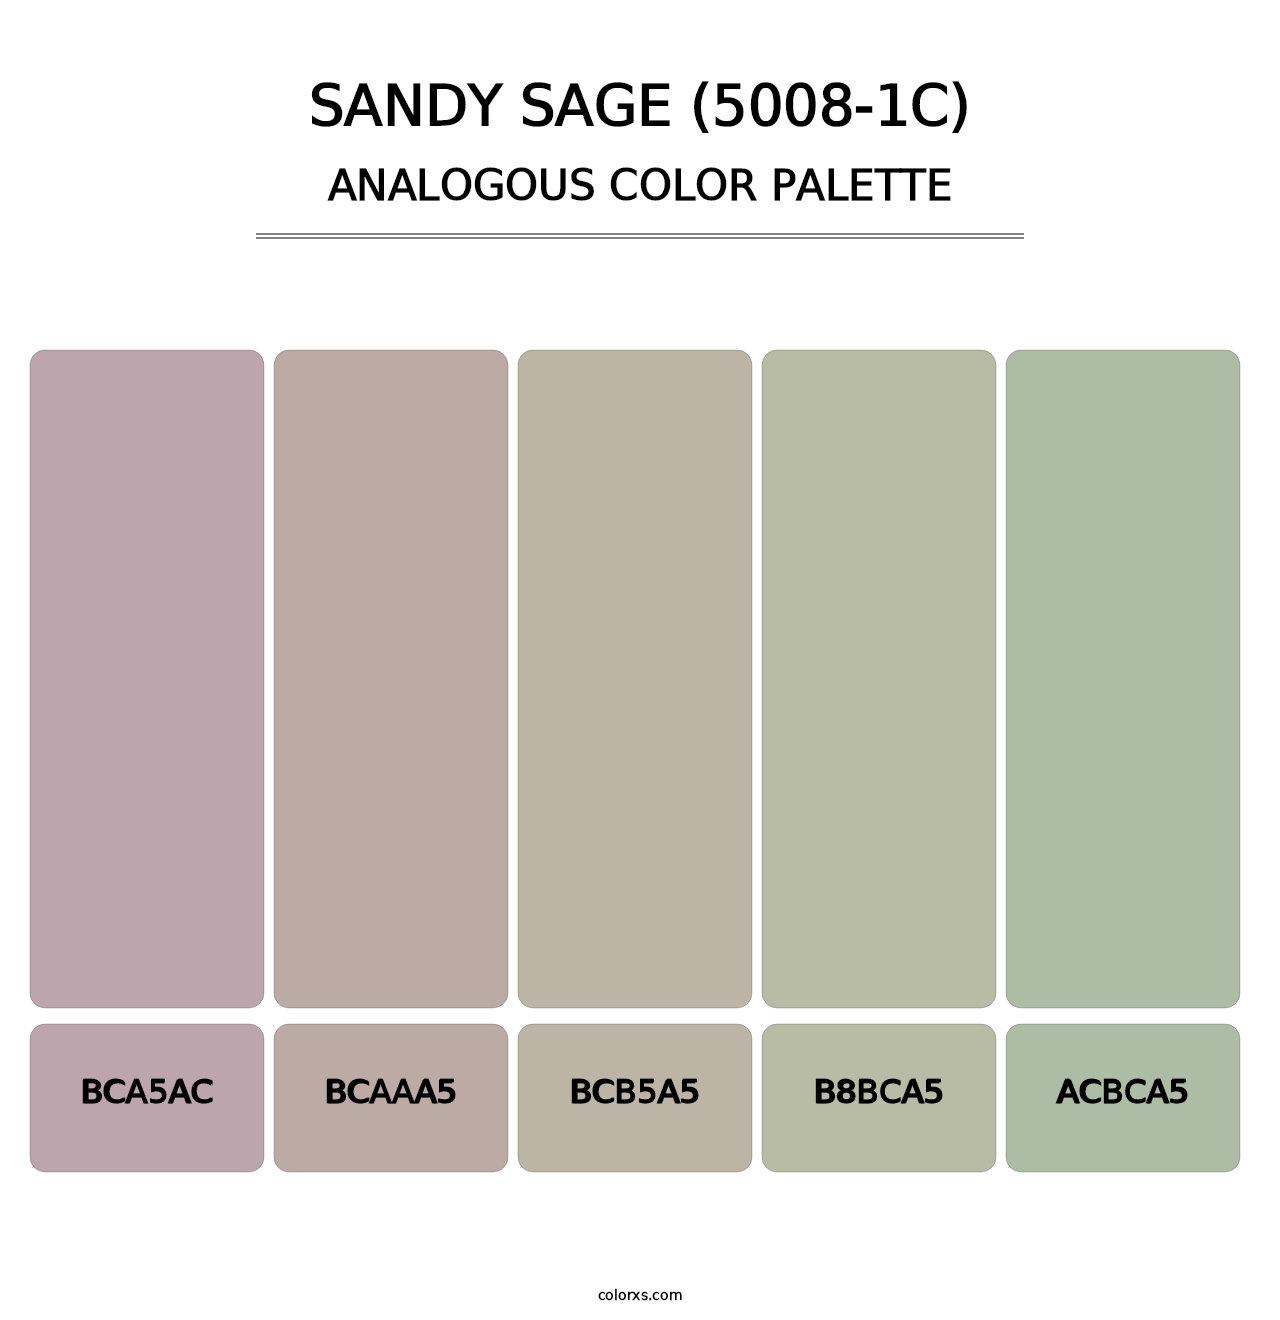 Sandy Sage (5008-1C) - Analogous Color Palette